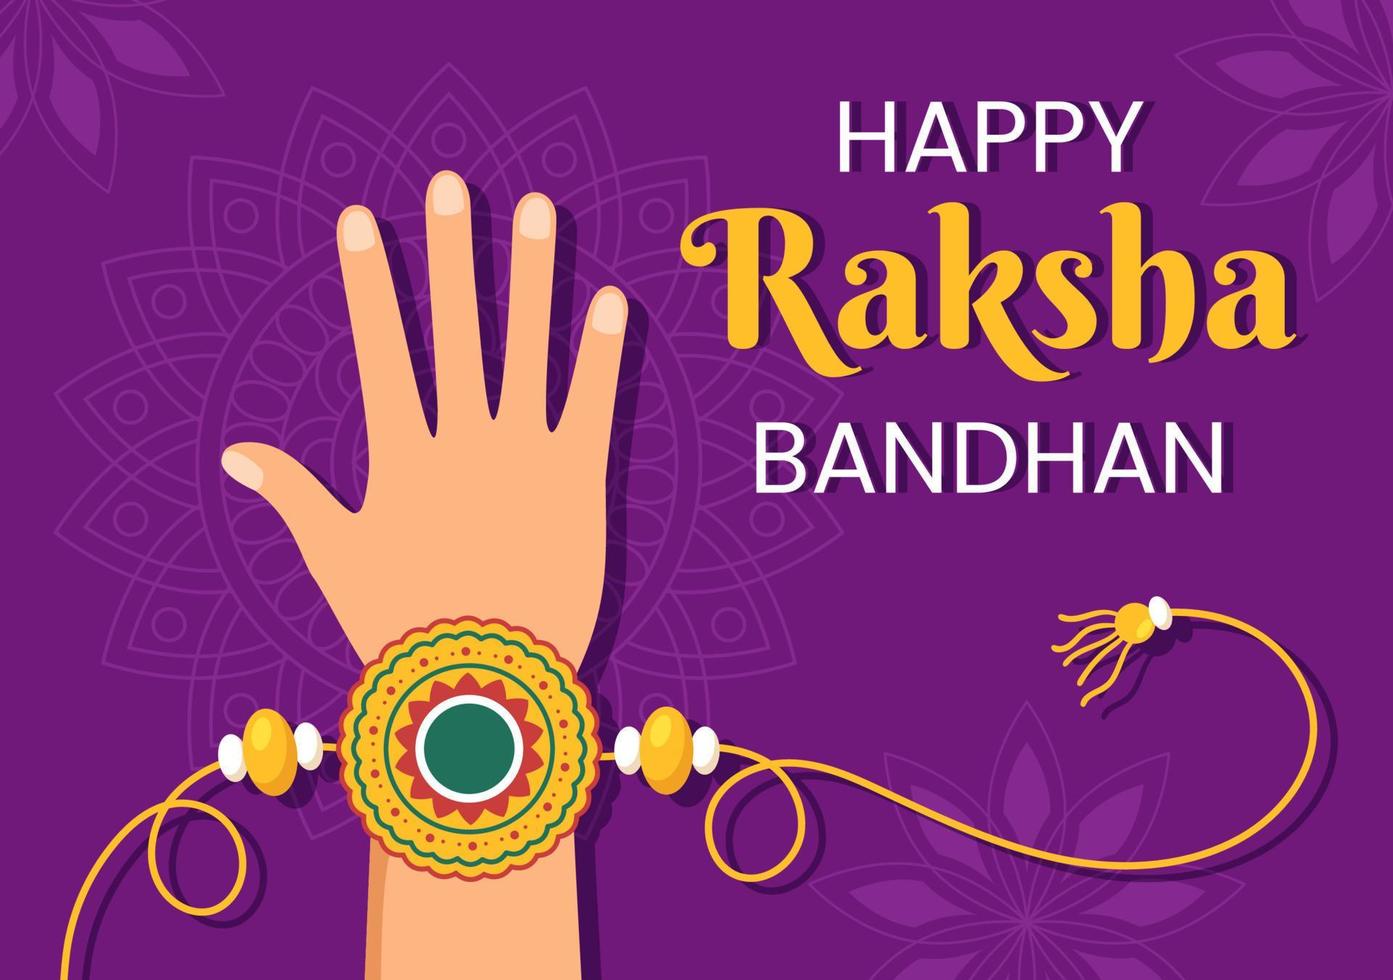 glad raksha bandhan tecknad illustration med syster som knyter rakhi på hennes bröders handled för att beteckna kärleksband i indisk festivalfirande vektor